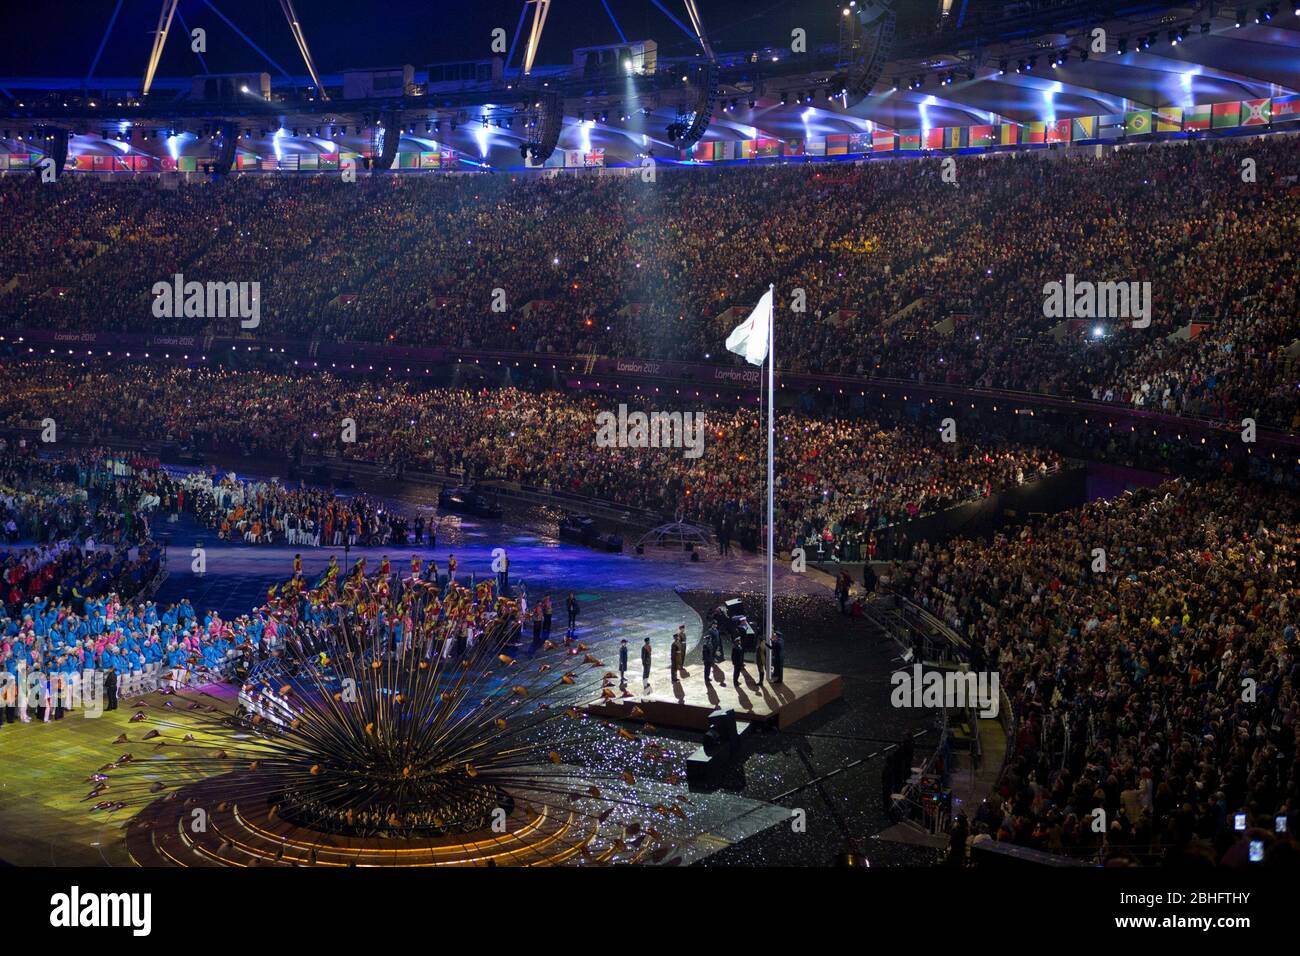 Londres Angleterre, 29 août 2012 : une foule de spectateurs au stade olympique regarde le spectacle des cérémonies d'ouverture des Jeux paralympiques de Londres de 2012. ©Bob Daemmrich Banque D'Images